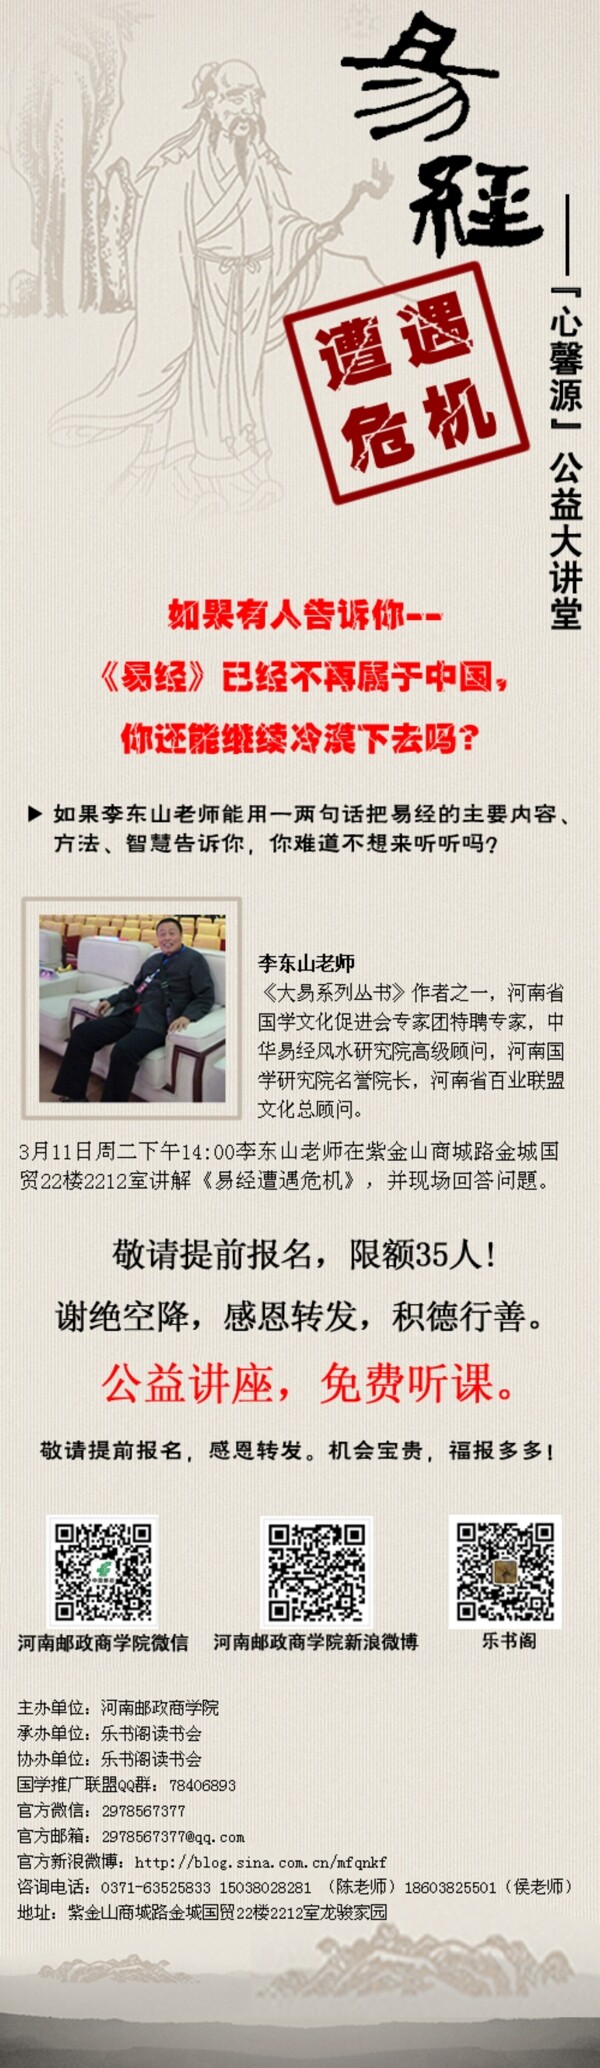 中国风微信博宣传设计图片